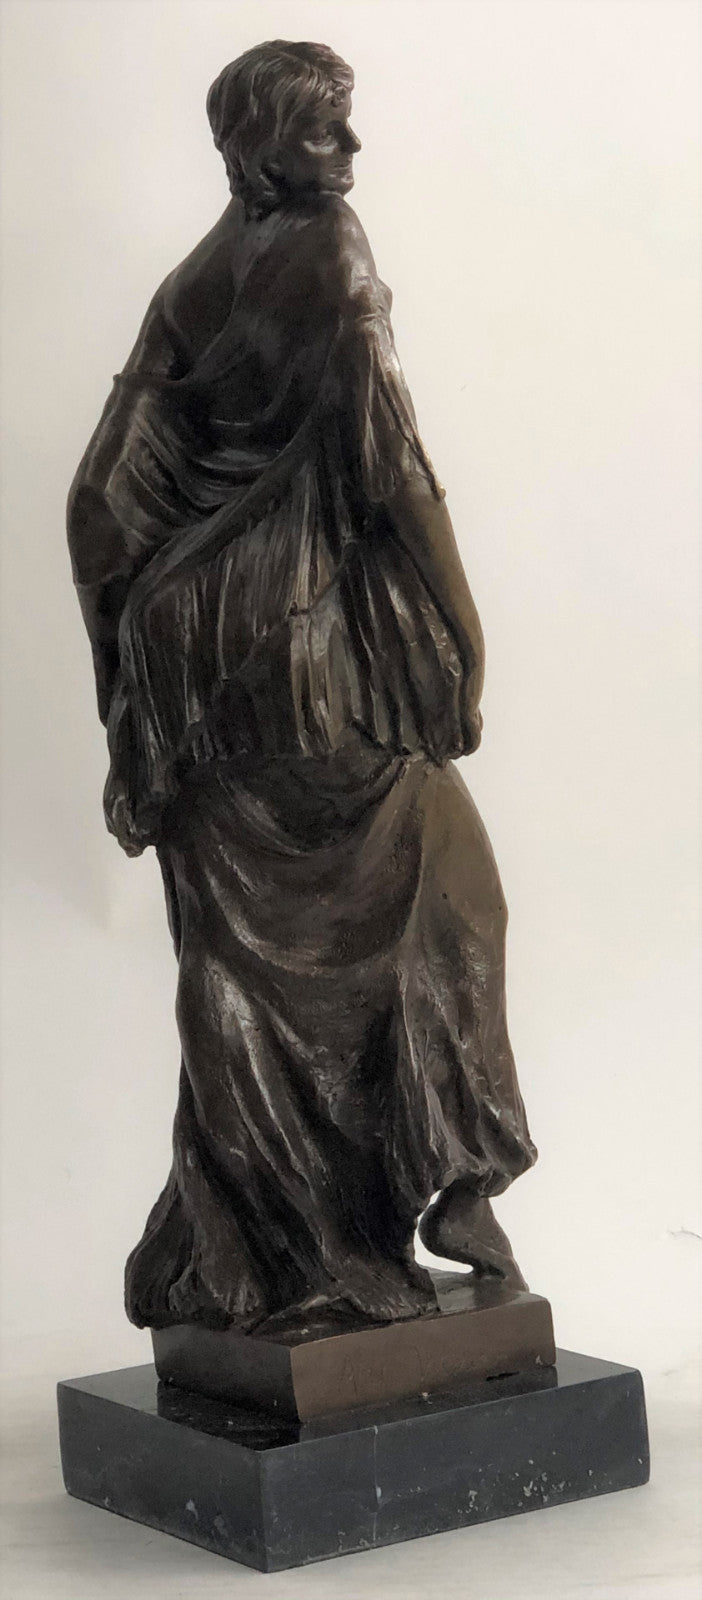 Maiden Nude Sexy Female Figure Hot Cast bronze Sculpture Figurine Home Deco T